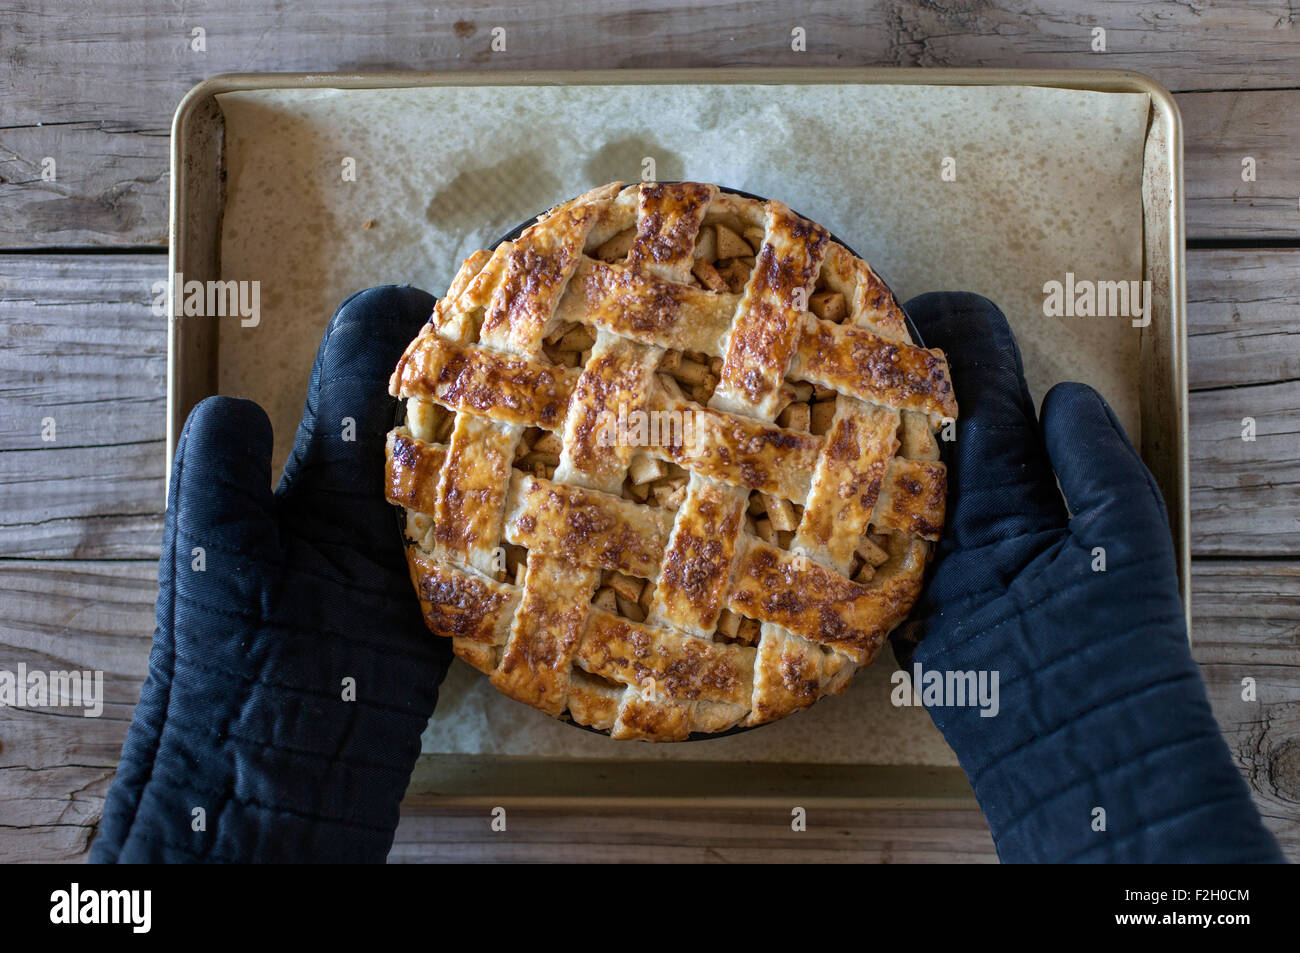 Ein frisch gebackener (noch warmer) Karamell Apfelkuchen ist von einer Person tragen Topflappen auf den Tisch gelegt. Stockfoto